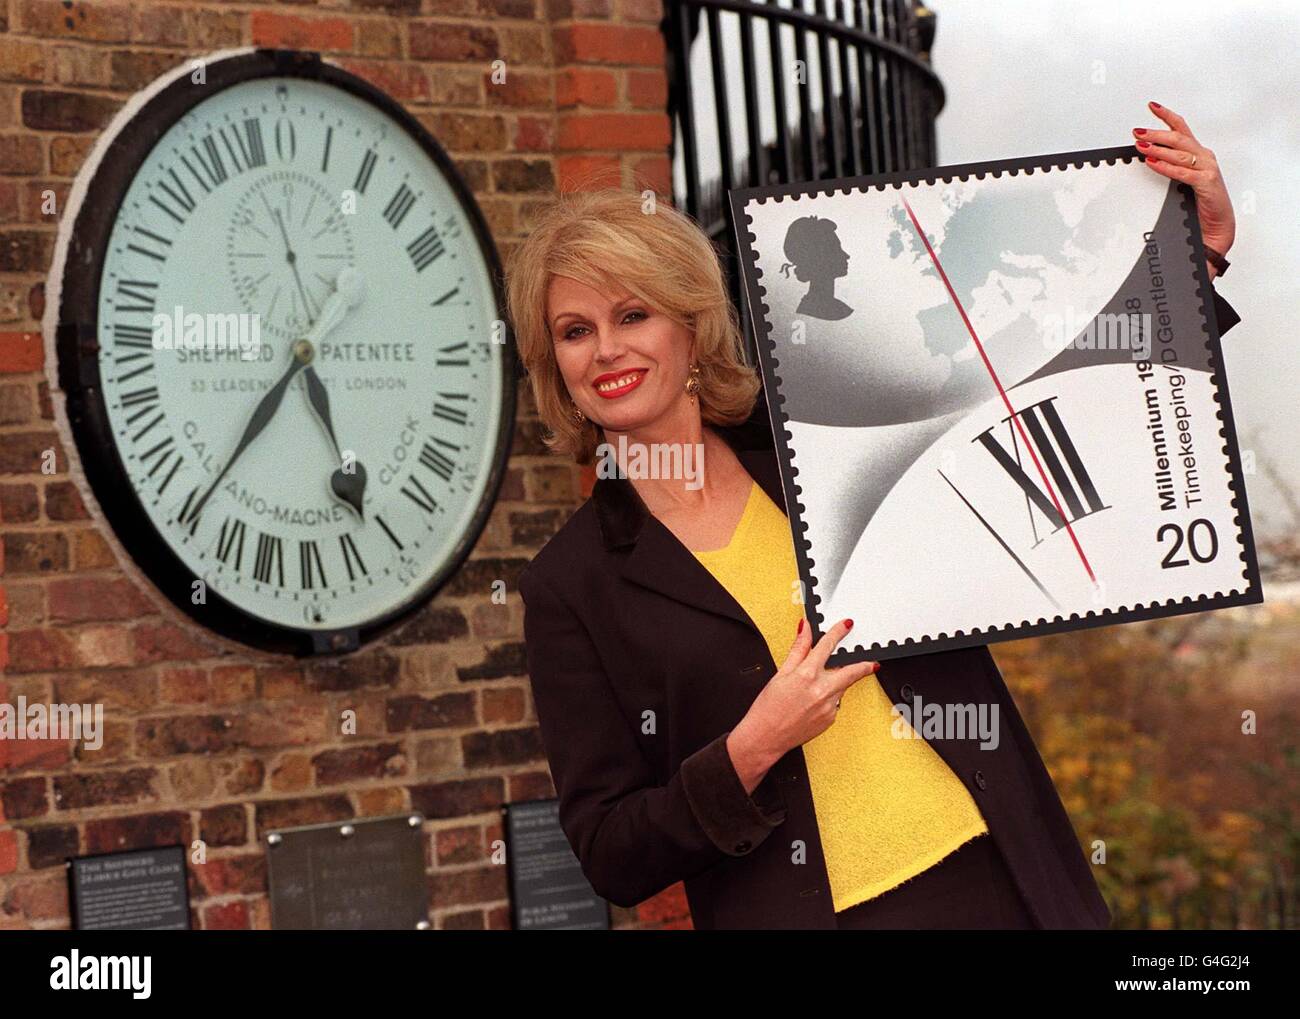 L'actrice Joanna Lumley se tenant devant l'horloge de Greenwich à l'Observatoire Royal de Greenwich, à Londres aujourd'hui (jeudi) pour marquer le lancement de la Collection Millenium de Royal Mail, sa plus grande mise en service d'œuvres d'art pour un ensemble de 48 timbres du Millénaire. Quatre timbres seront lancés chaque mois en 1999 pour construire une image de l'histoire britannique au cours des 1,000 dernières années. Timbre en image partie des quatre premiers timbres émis intitulé « Inventor's Tale », montre de David Gentleman. Photo de Toby Melville/PA. Voir PA Story MILLENNIUM Stamp. Banque D'Images